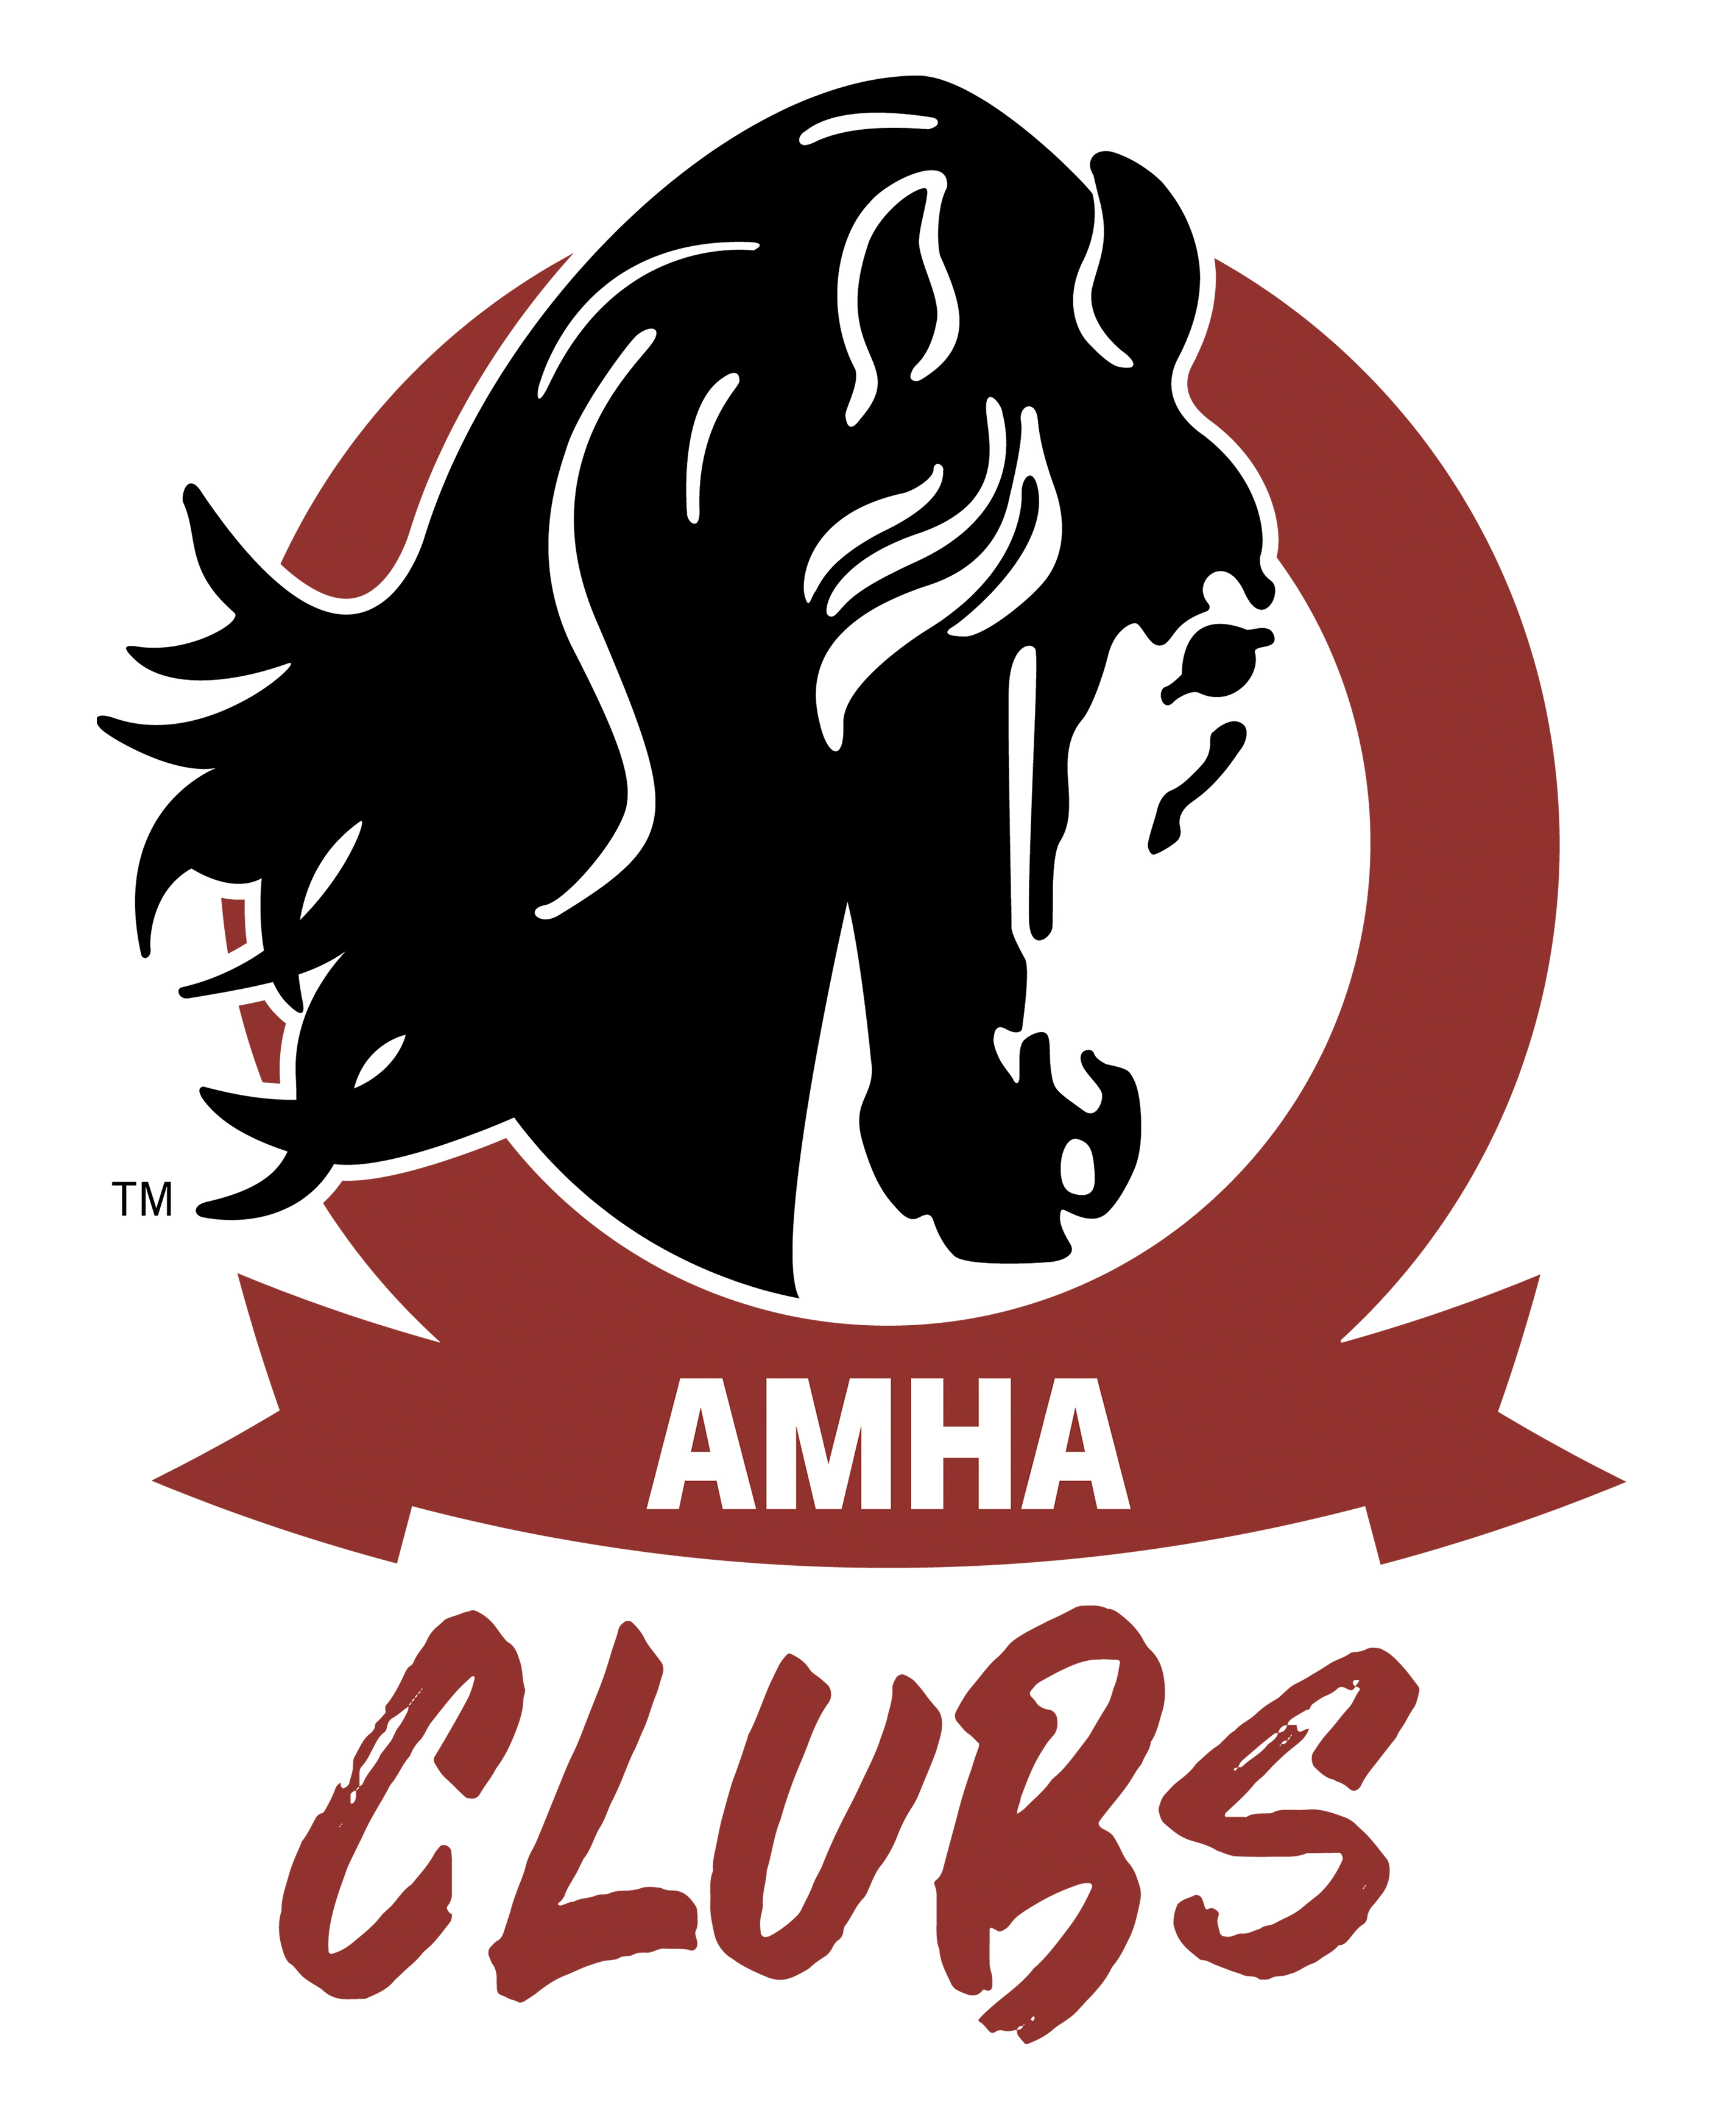 news_amha_clubs_logo_2021__1.jpg